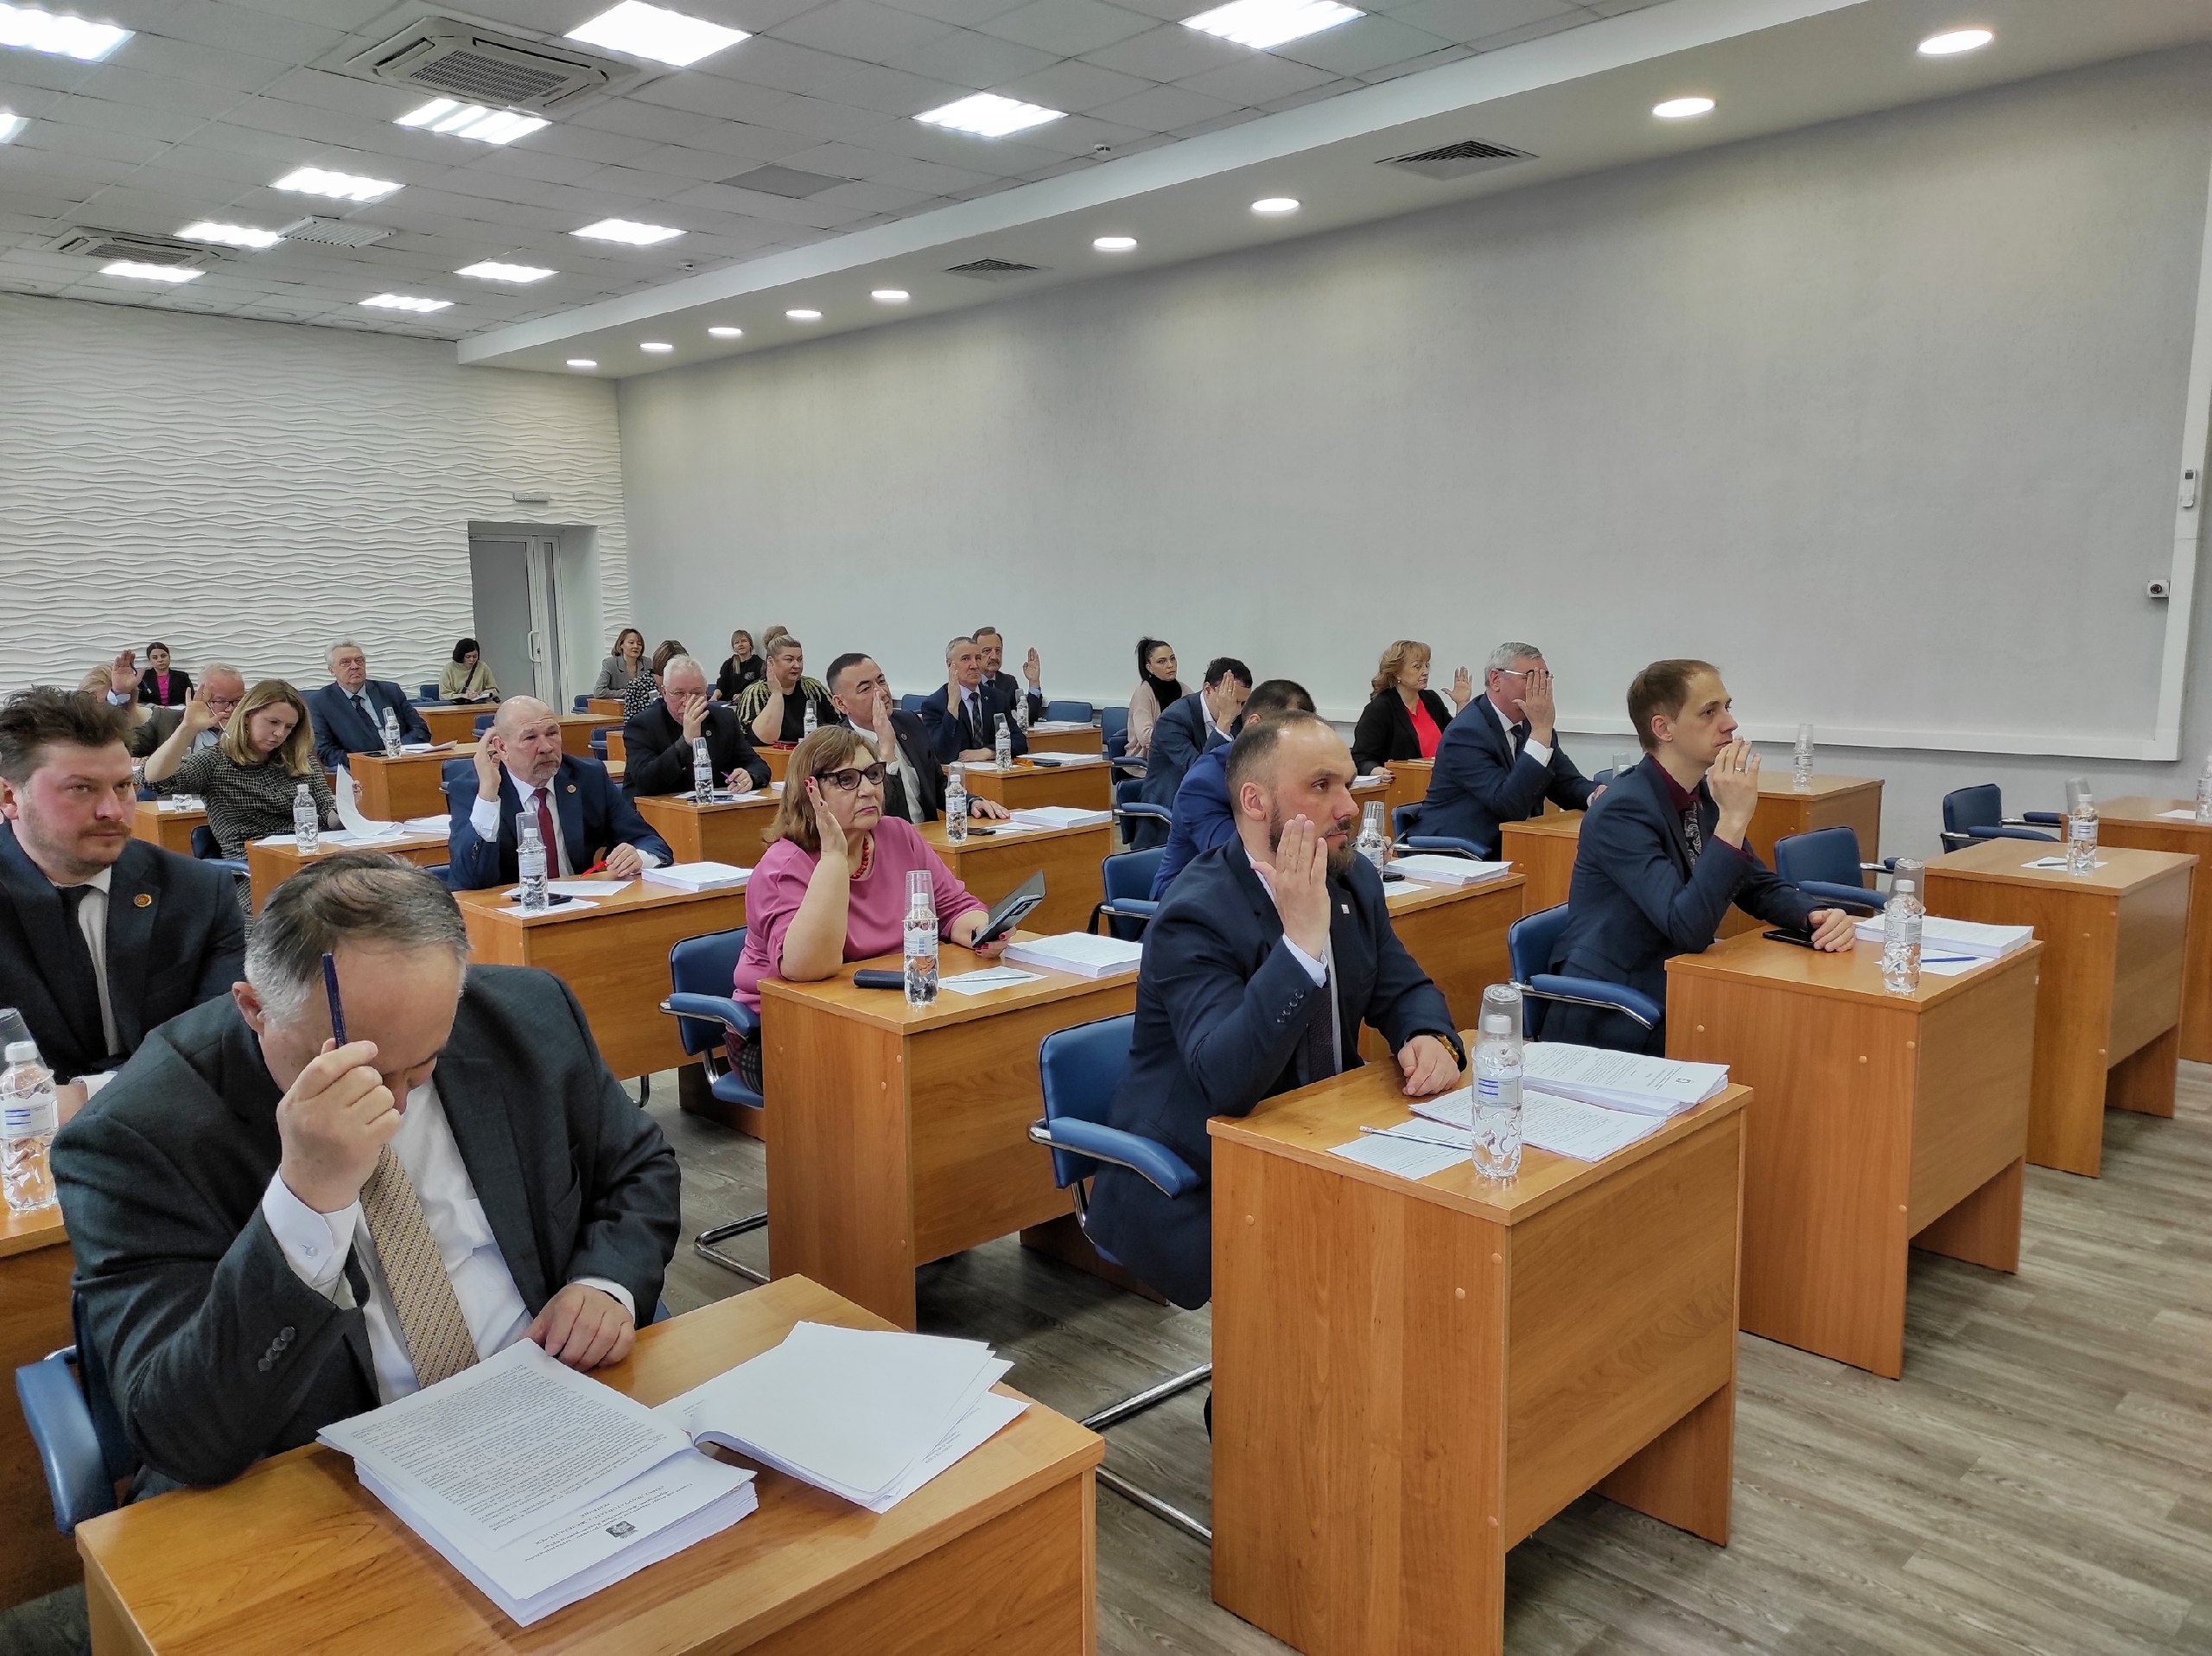 Сегодня в большом зале Администрации прошла 39-я внеочередная сессия Совета депутатов ЗАТО г. Железногорск